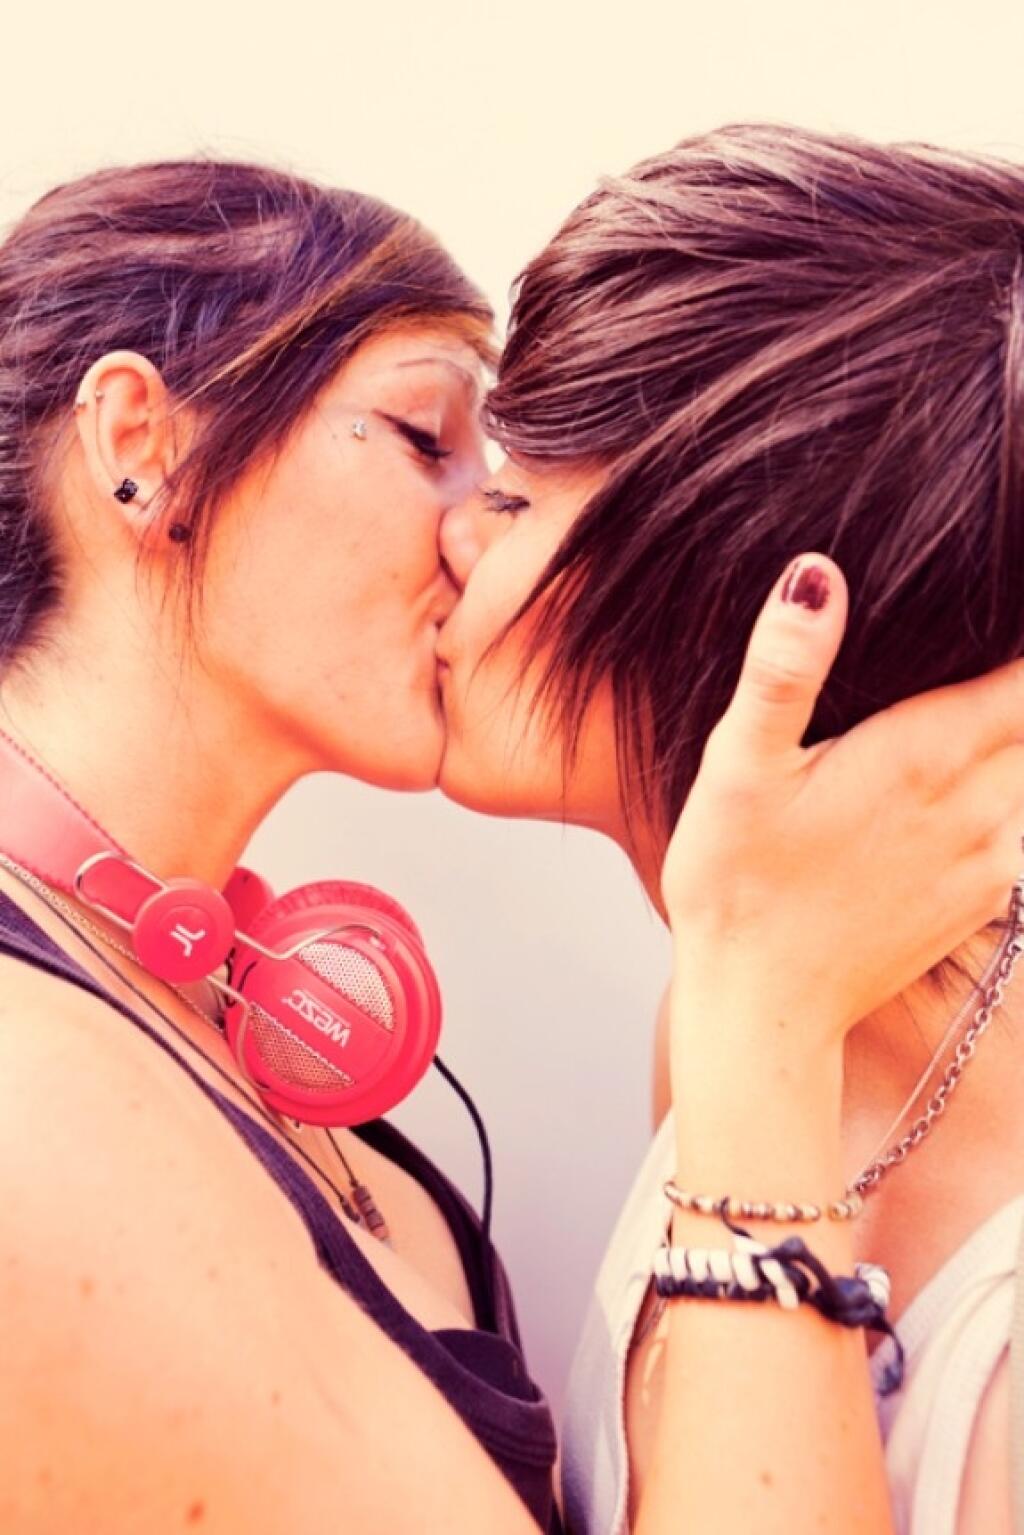 геи и лесбиянки любовь фото 24